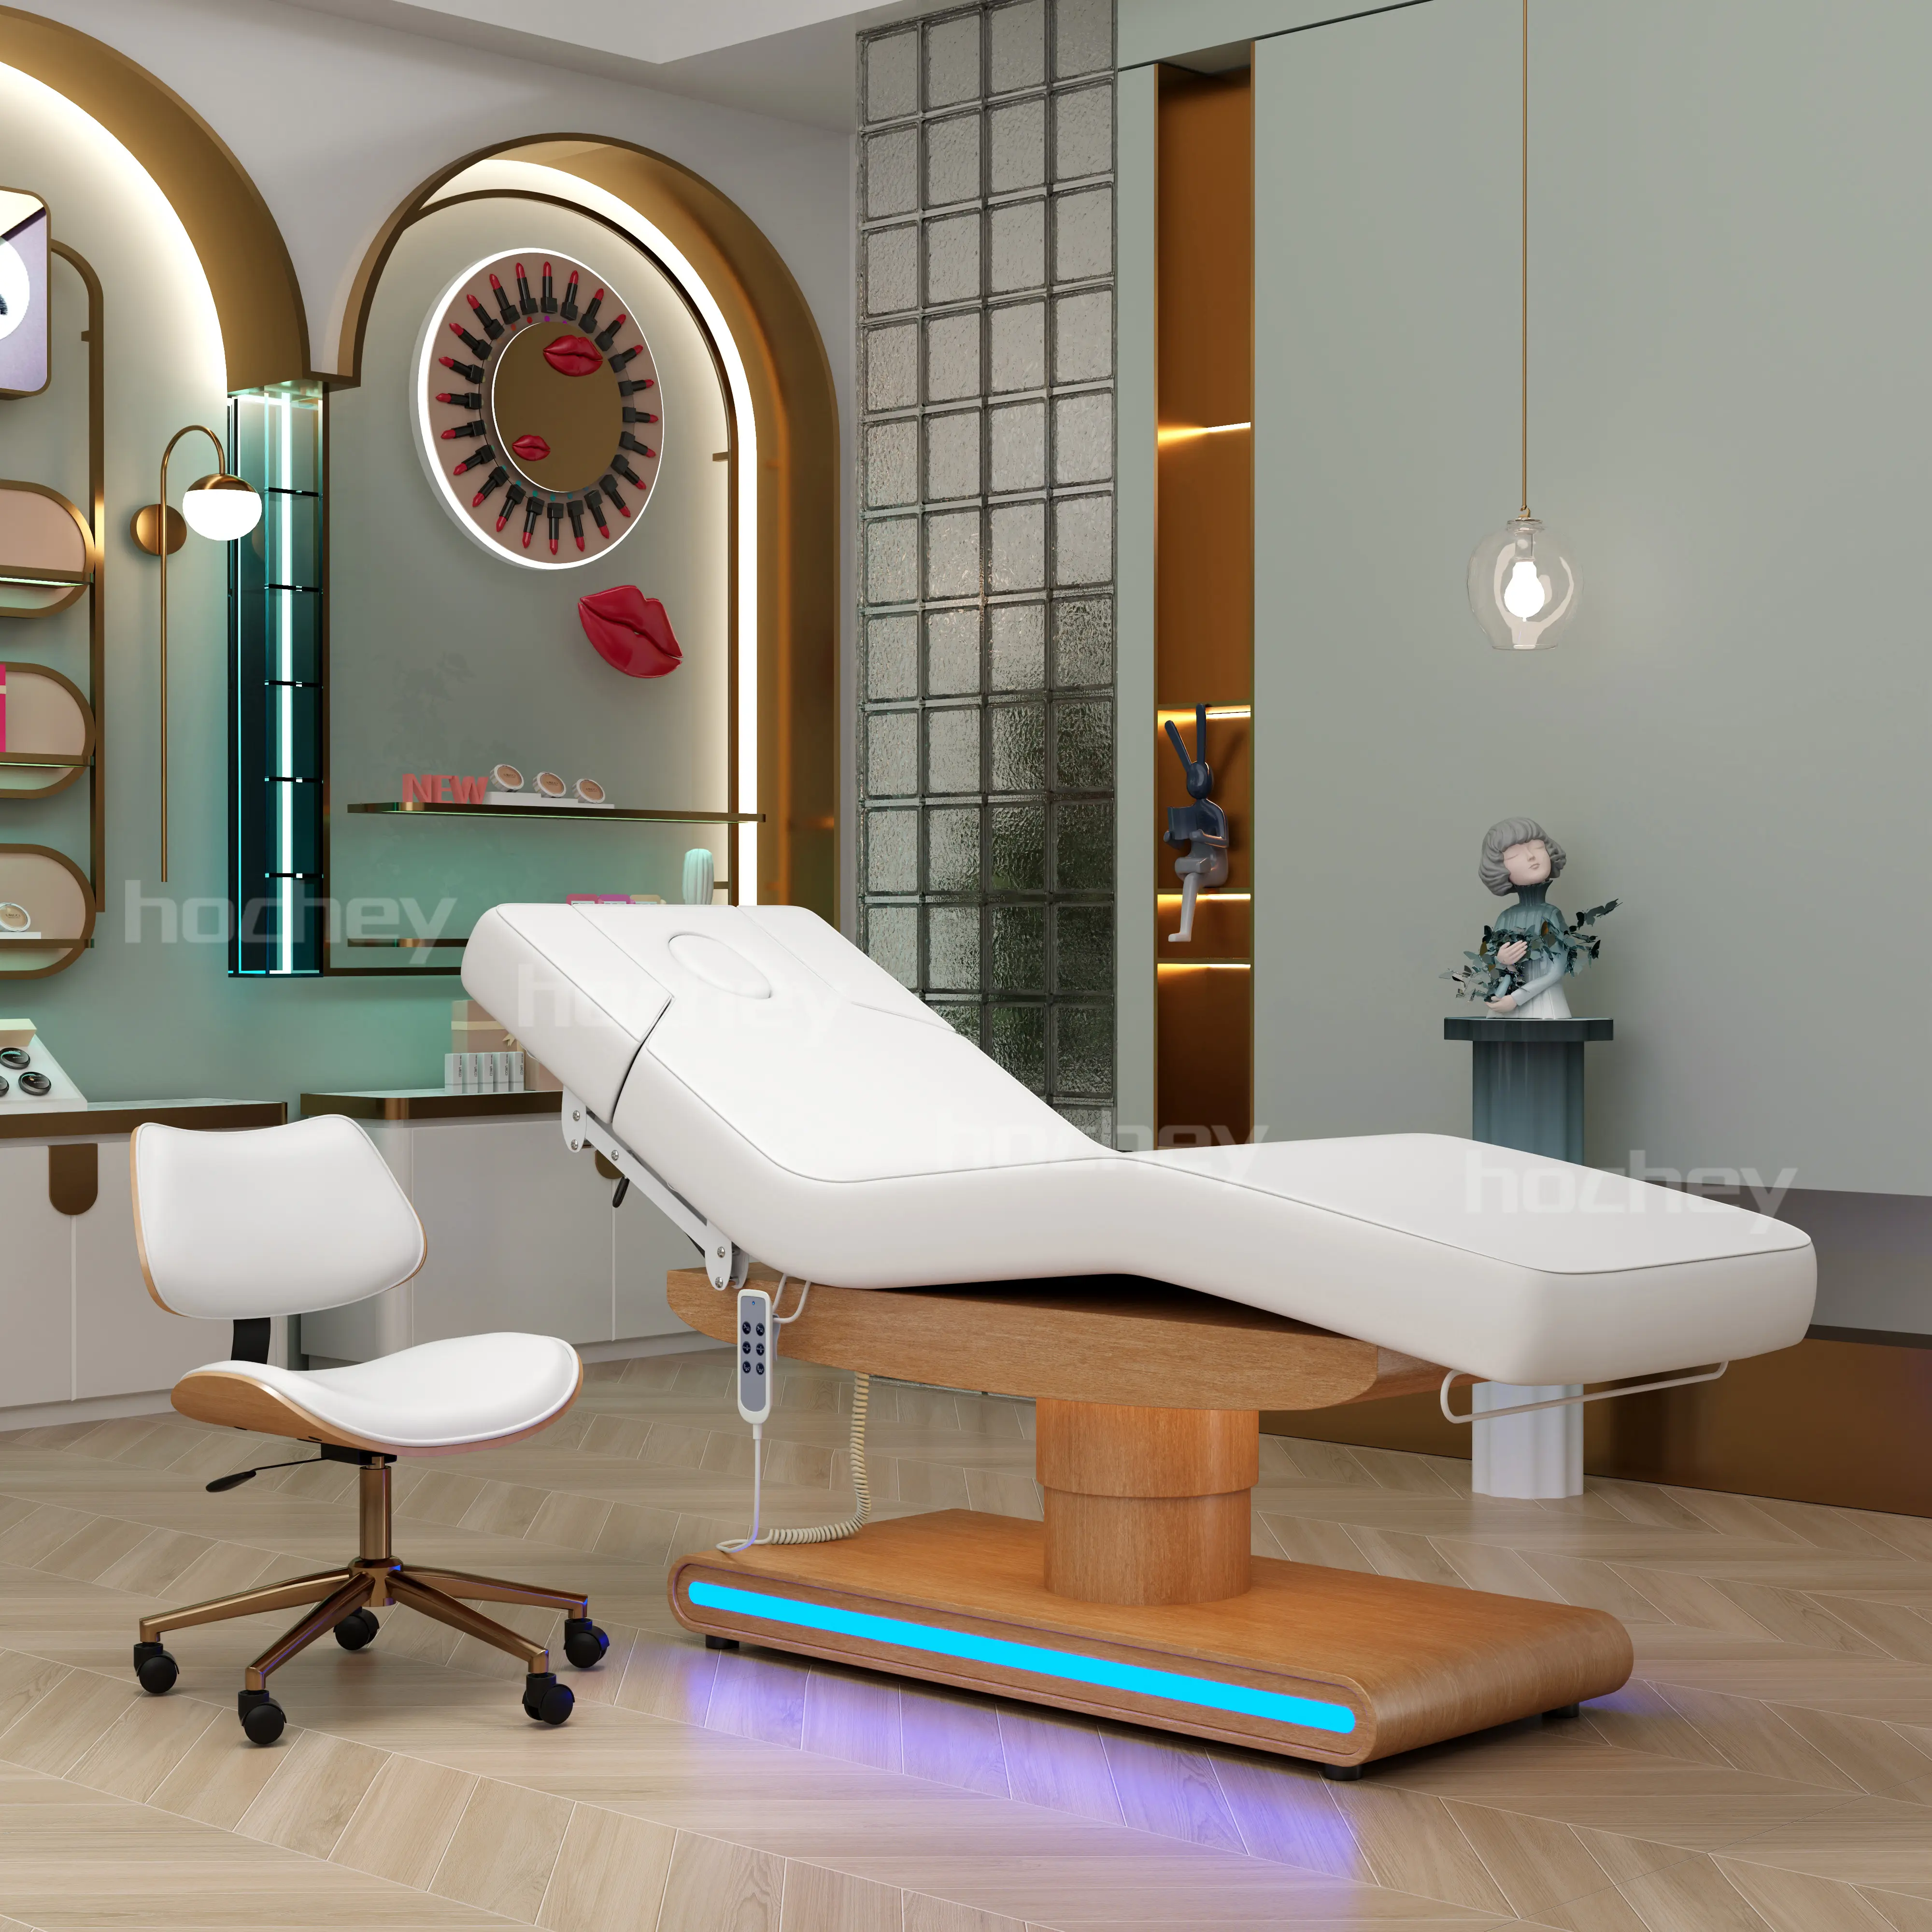 HOCHEY multifonctional thai espinha hair salon controle remoto peso leve mesas de massagem de madeira sólida cama para massagem corporal completa